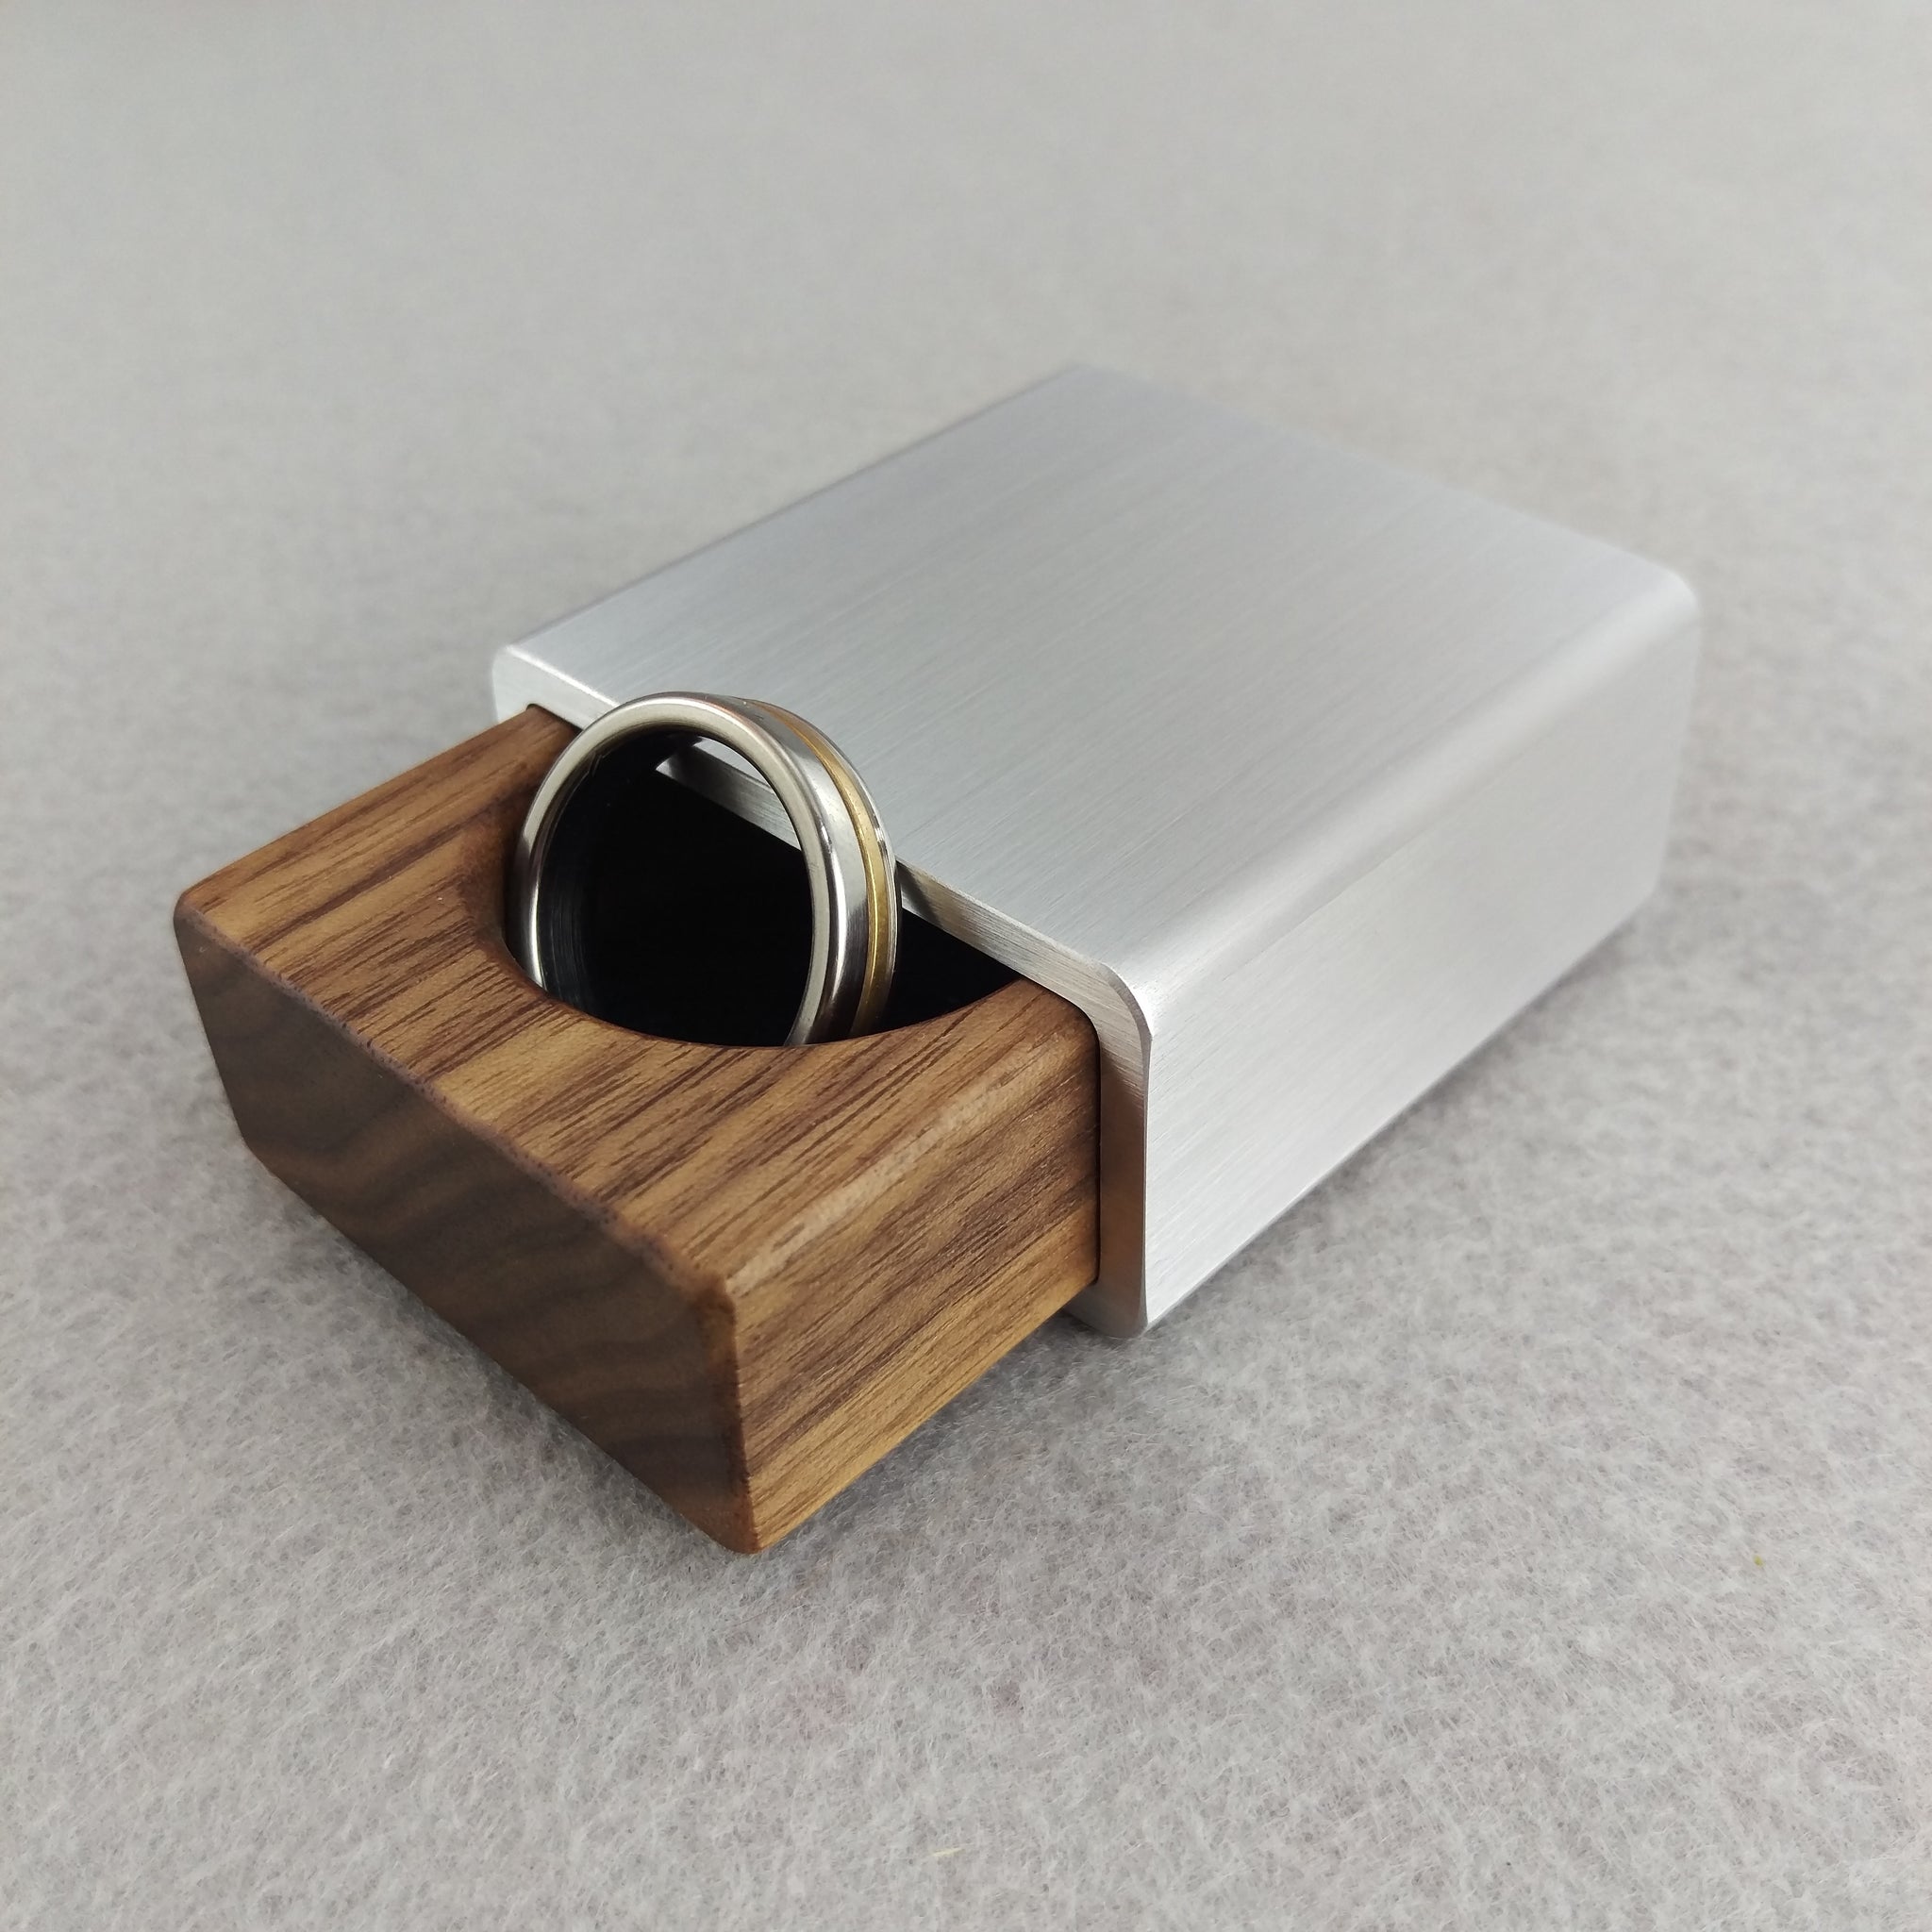 Pocket Size Engagement Ring Box - Brushed Aluminum and Zebrawood, Bloo ...